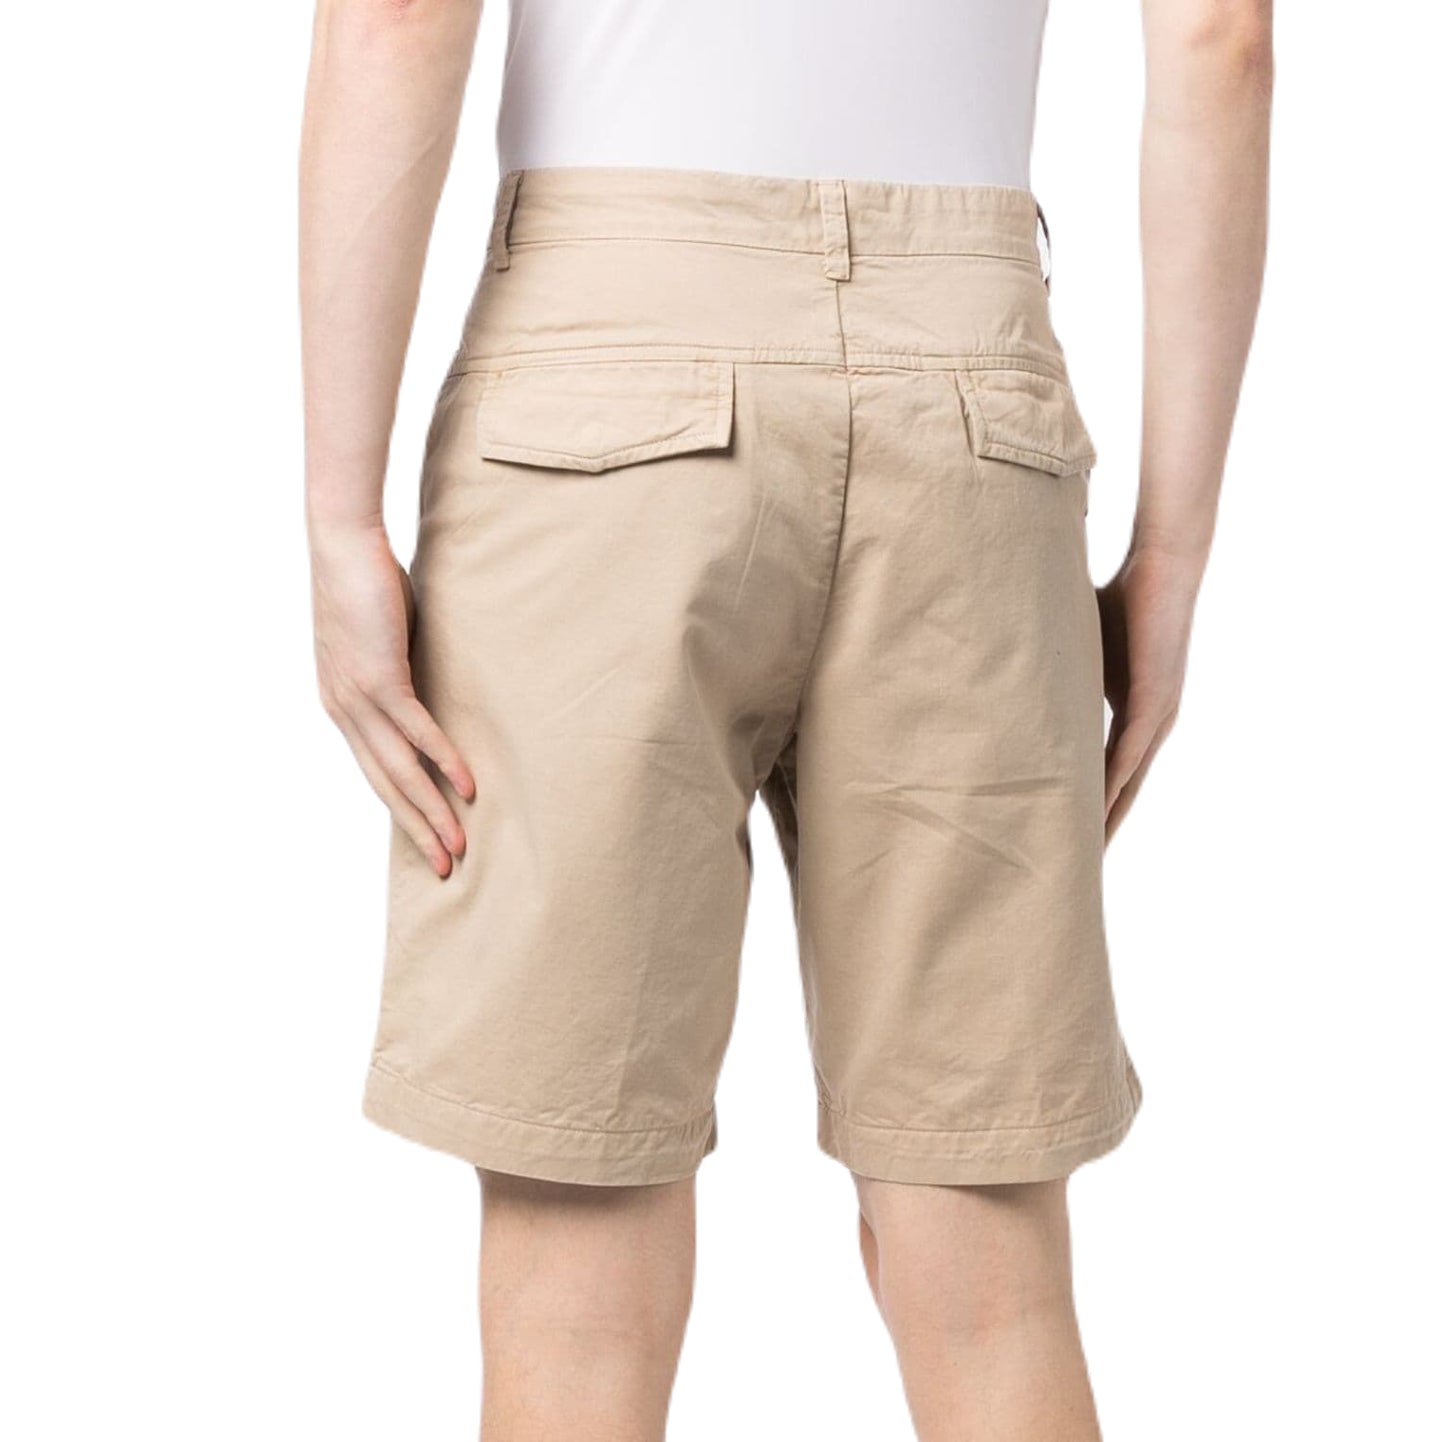 Emporio Armani 211824 Bermuda Shorts - 51 Beige - Escape Menswear